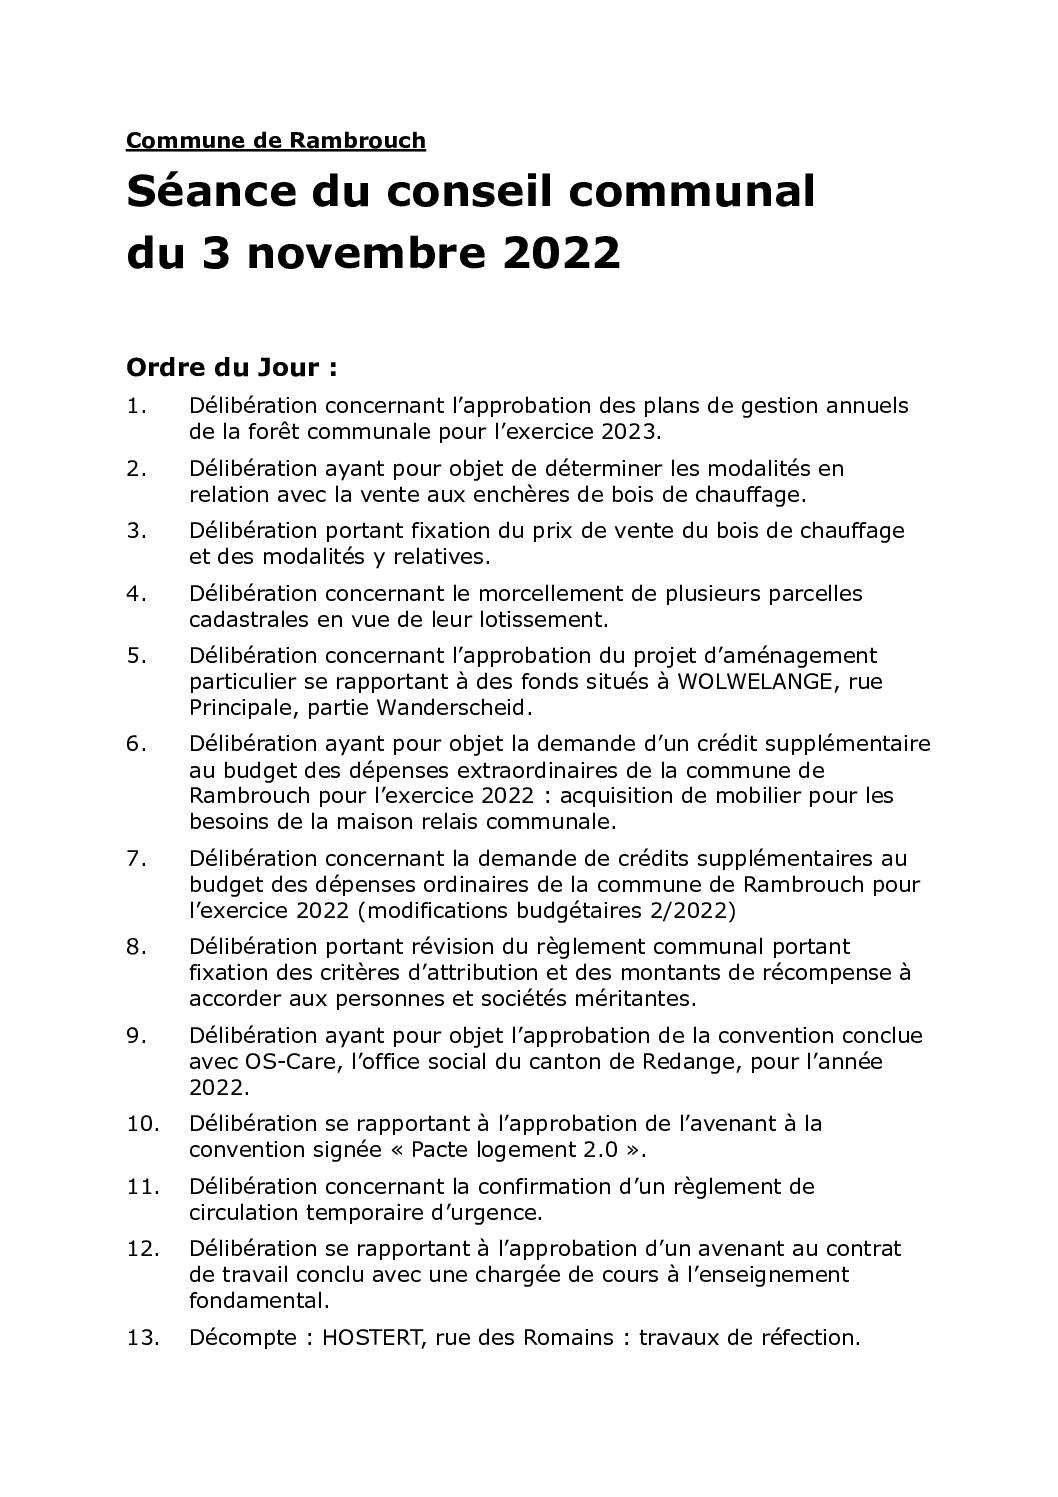 Rapport du conseil communal du 03.11.2022 (français)